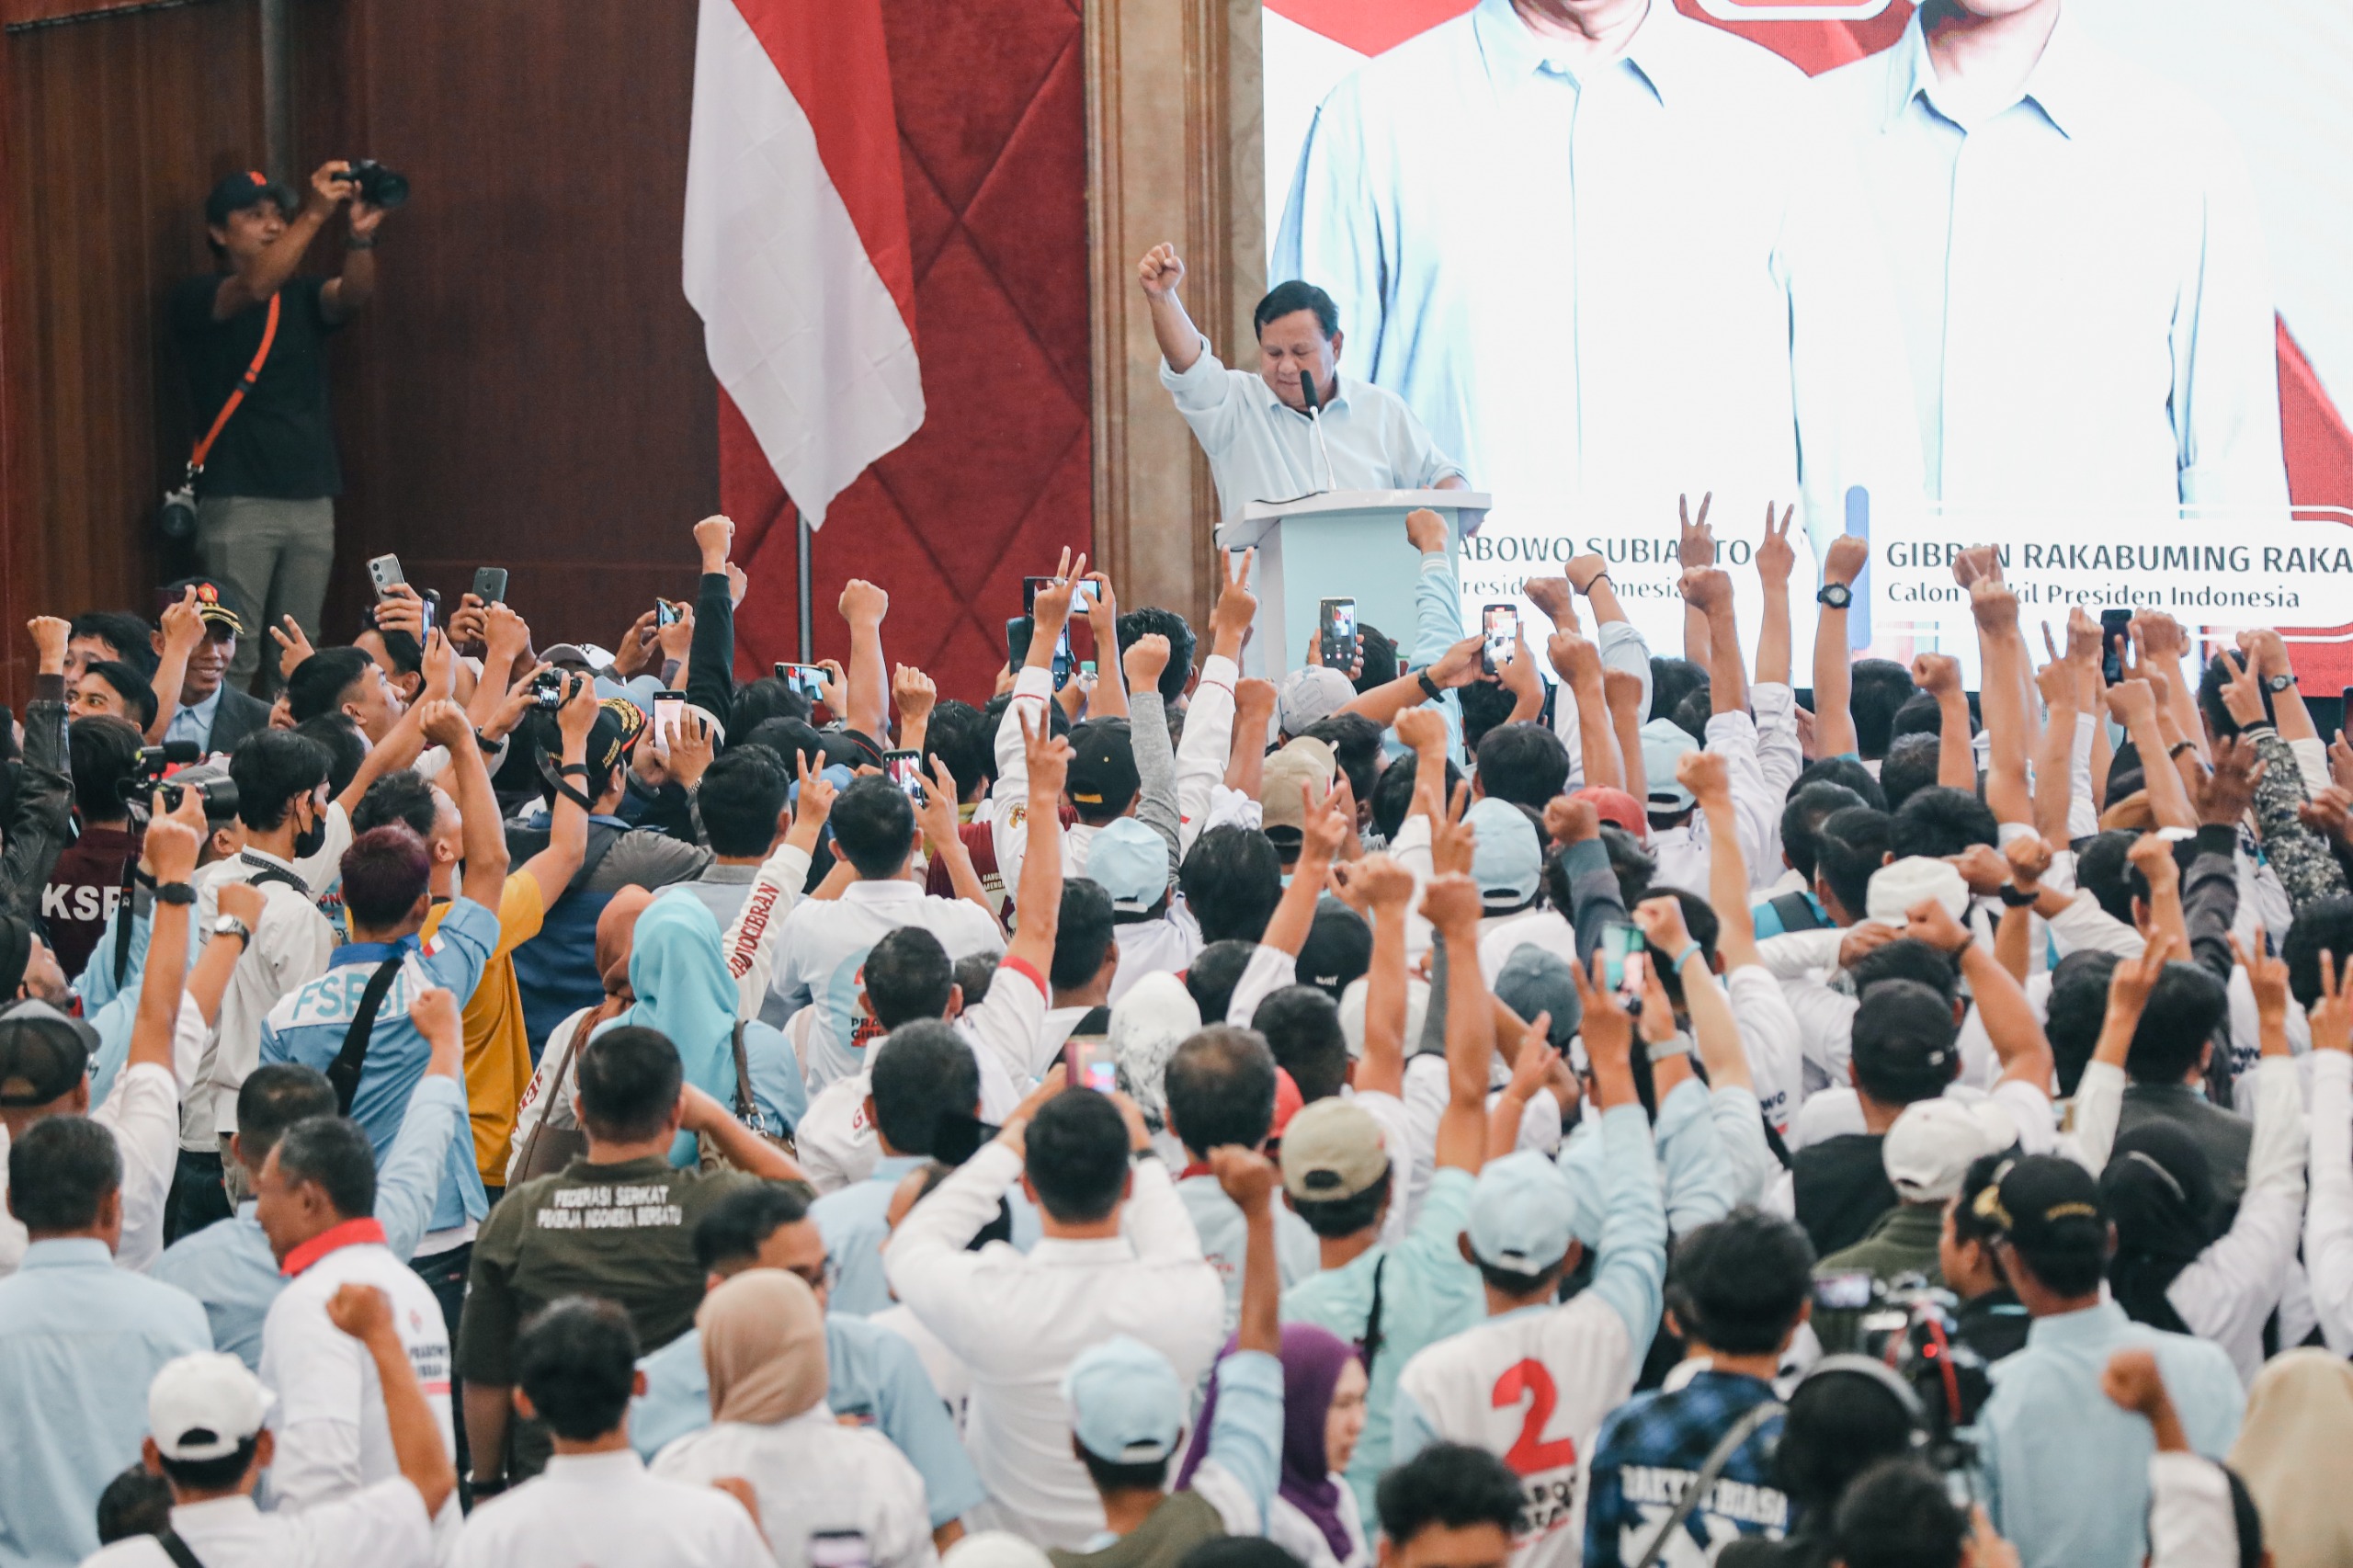 Capres Prabowo Subianto Yakin Indonesia Bisa Setara dengan Bangsa-bangsa Lain di Dunia